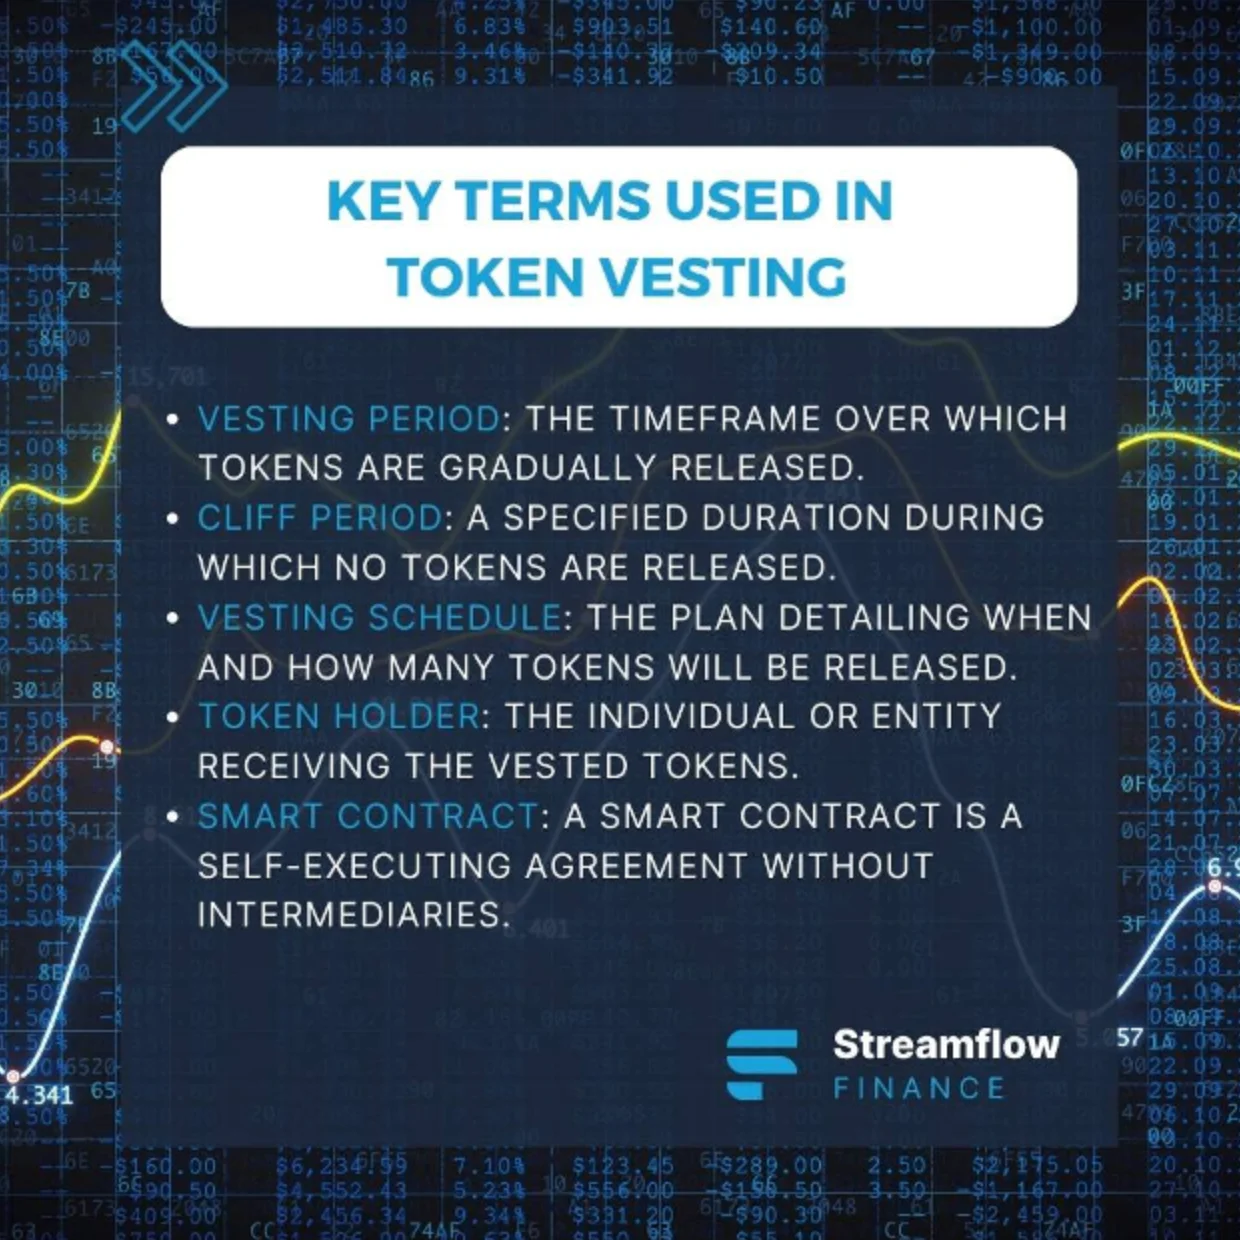 Key Terms used in Token Vesting